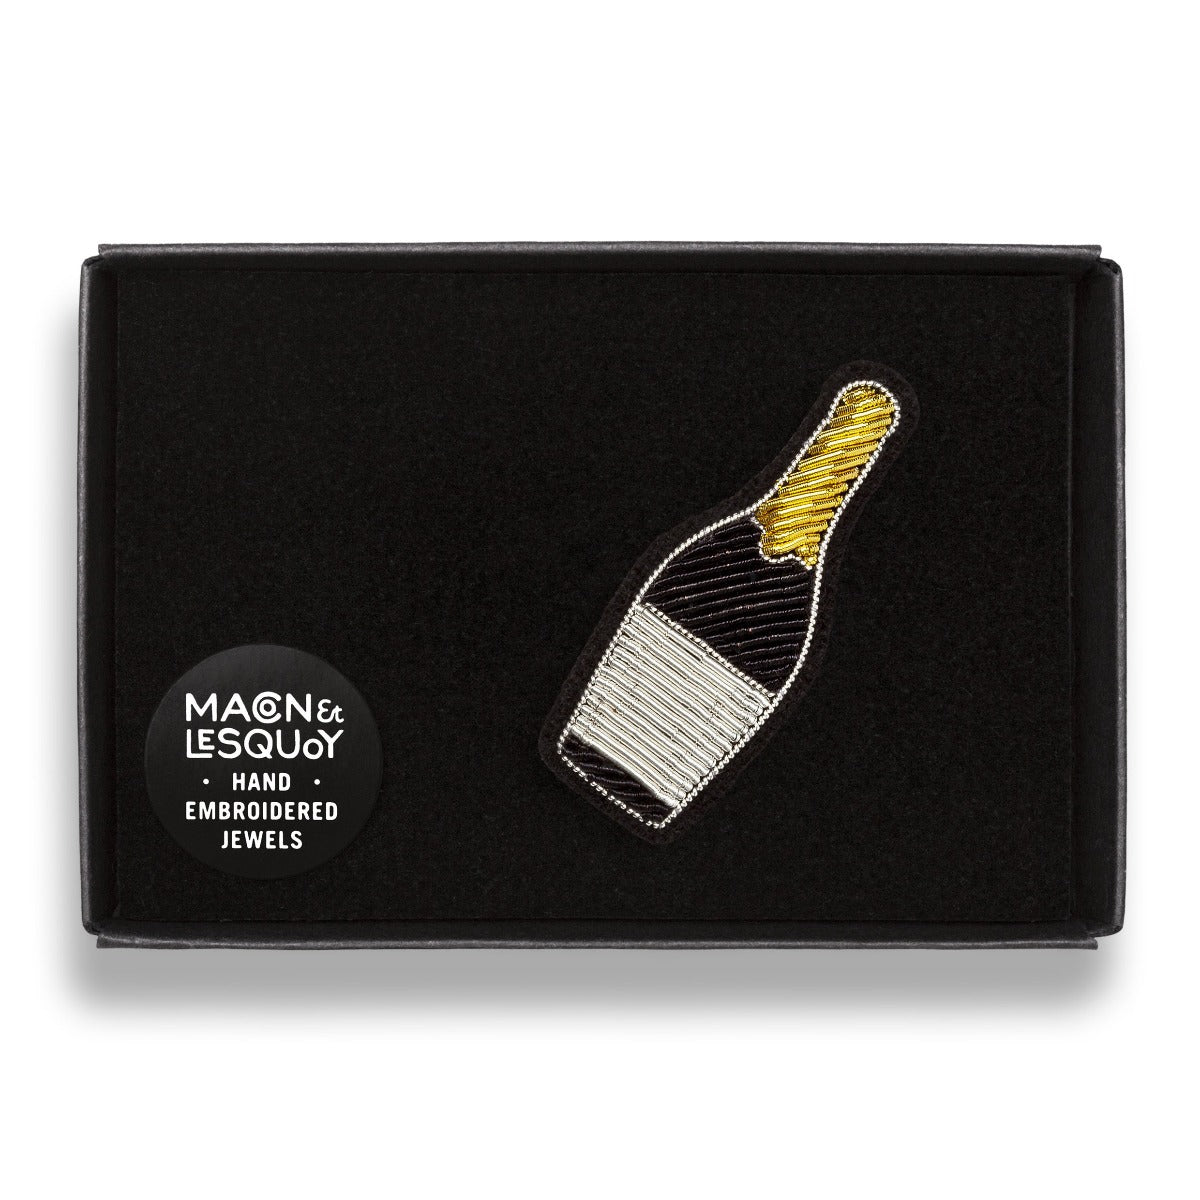 Broche brodée à la main de la marque Macon et Lesquoy. Cette broche de couleur blanche, noire et dorée représente une bouteille de champagne.